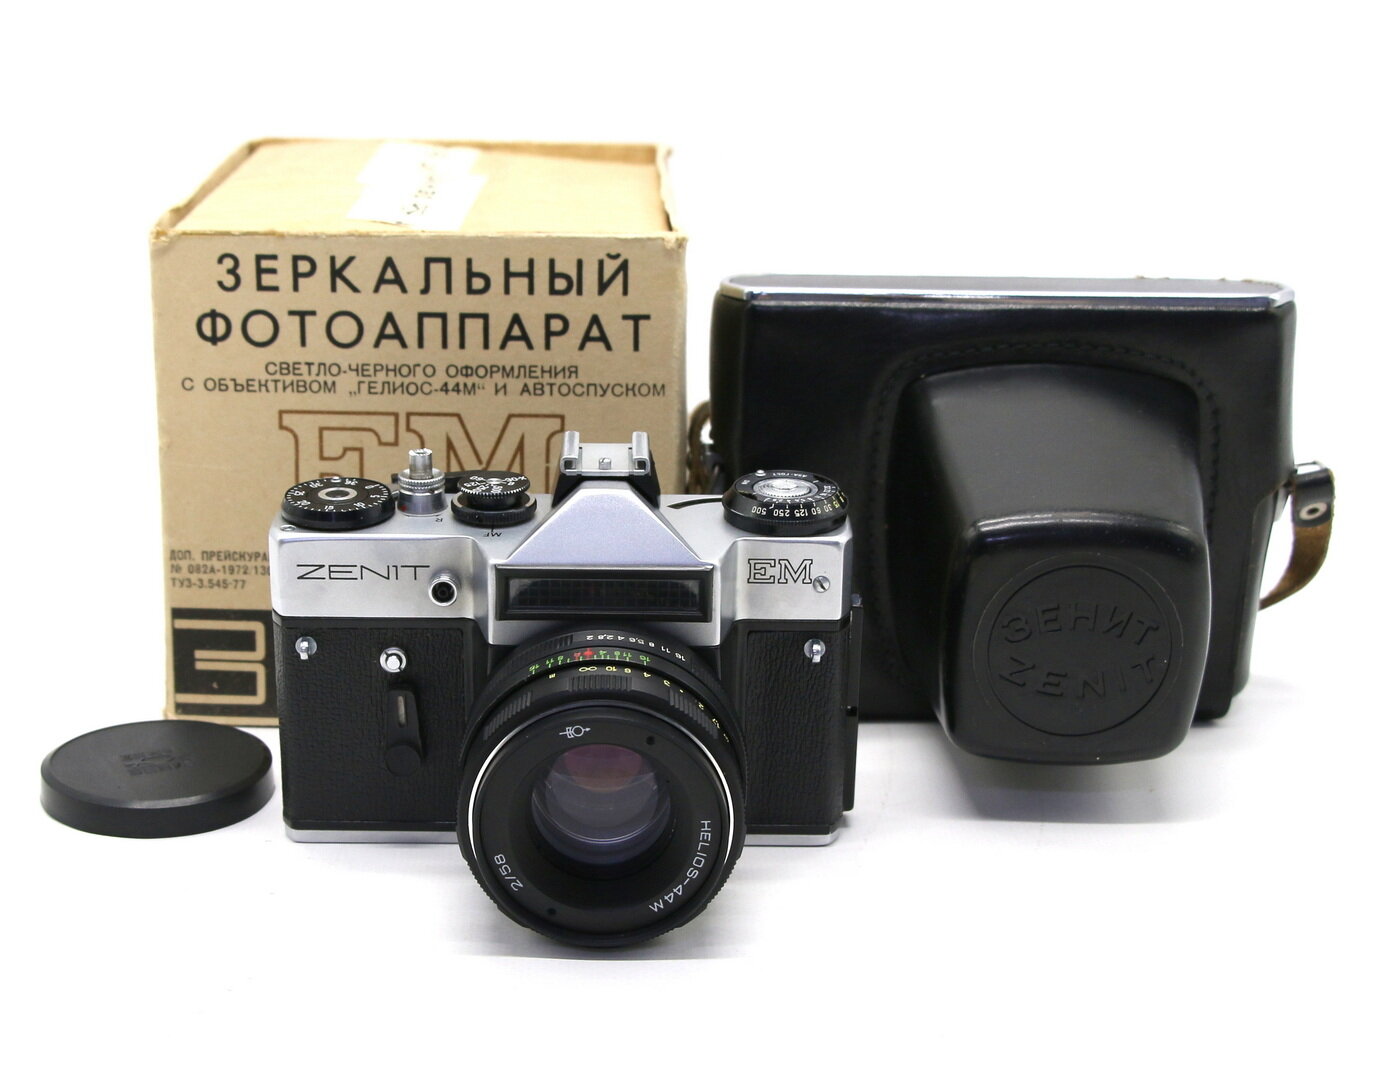 Зенит ЕМ kit silver в упаковке (СССР, 1983)